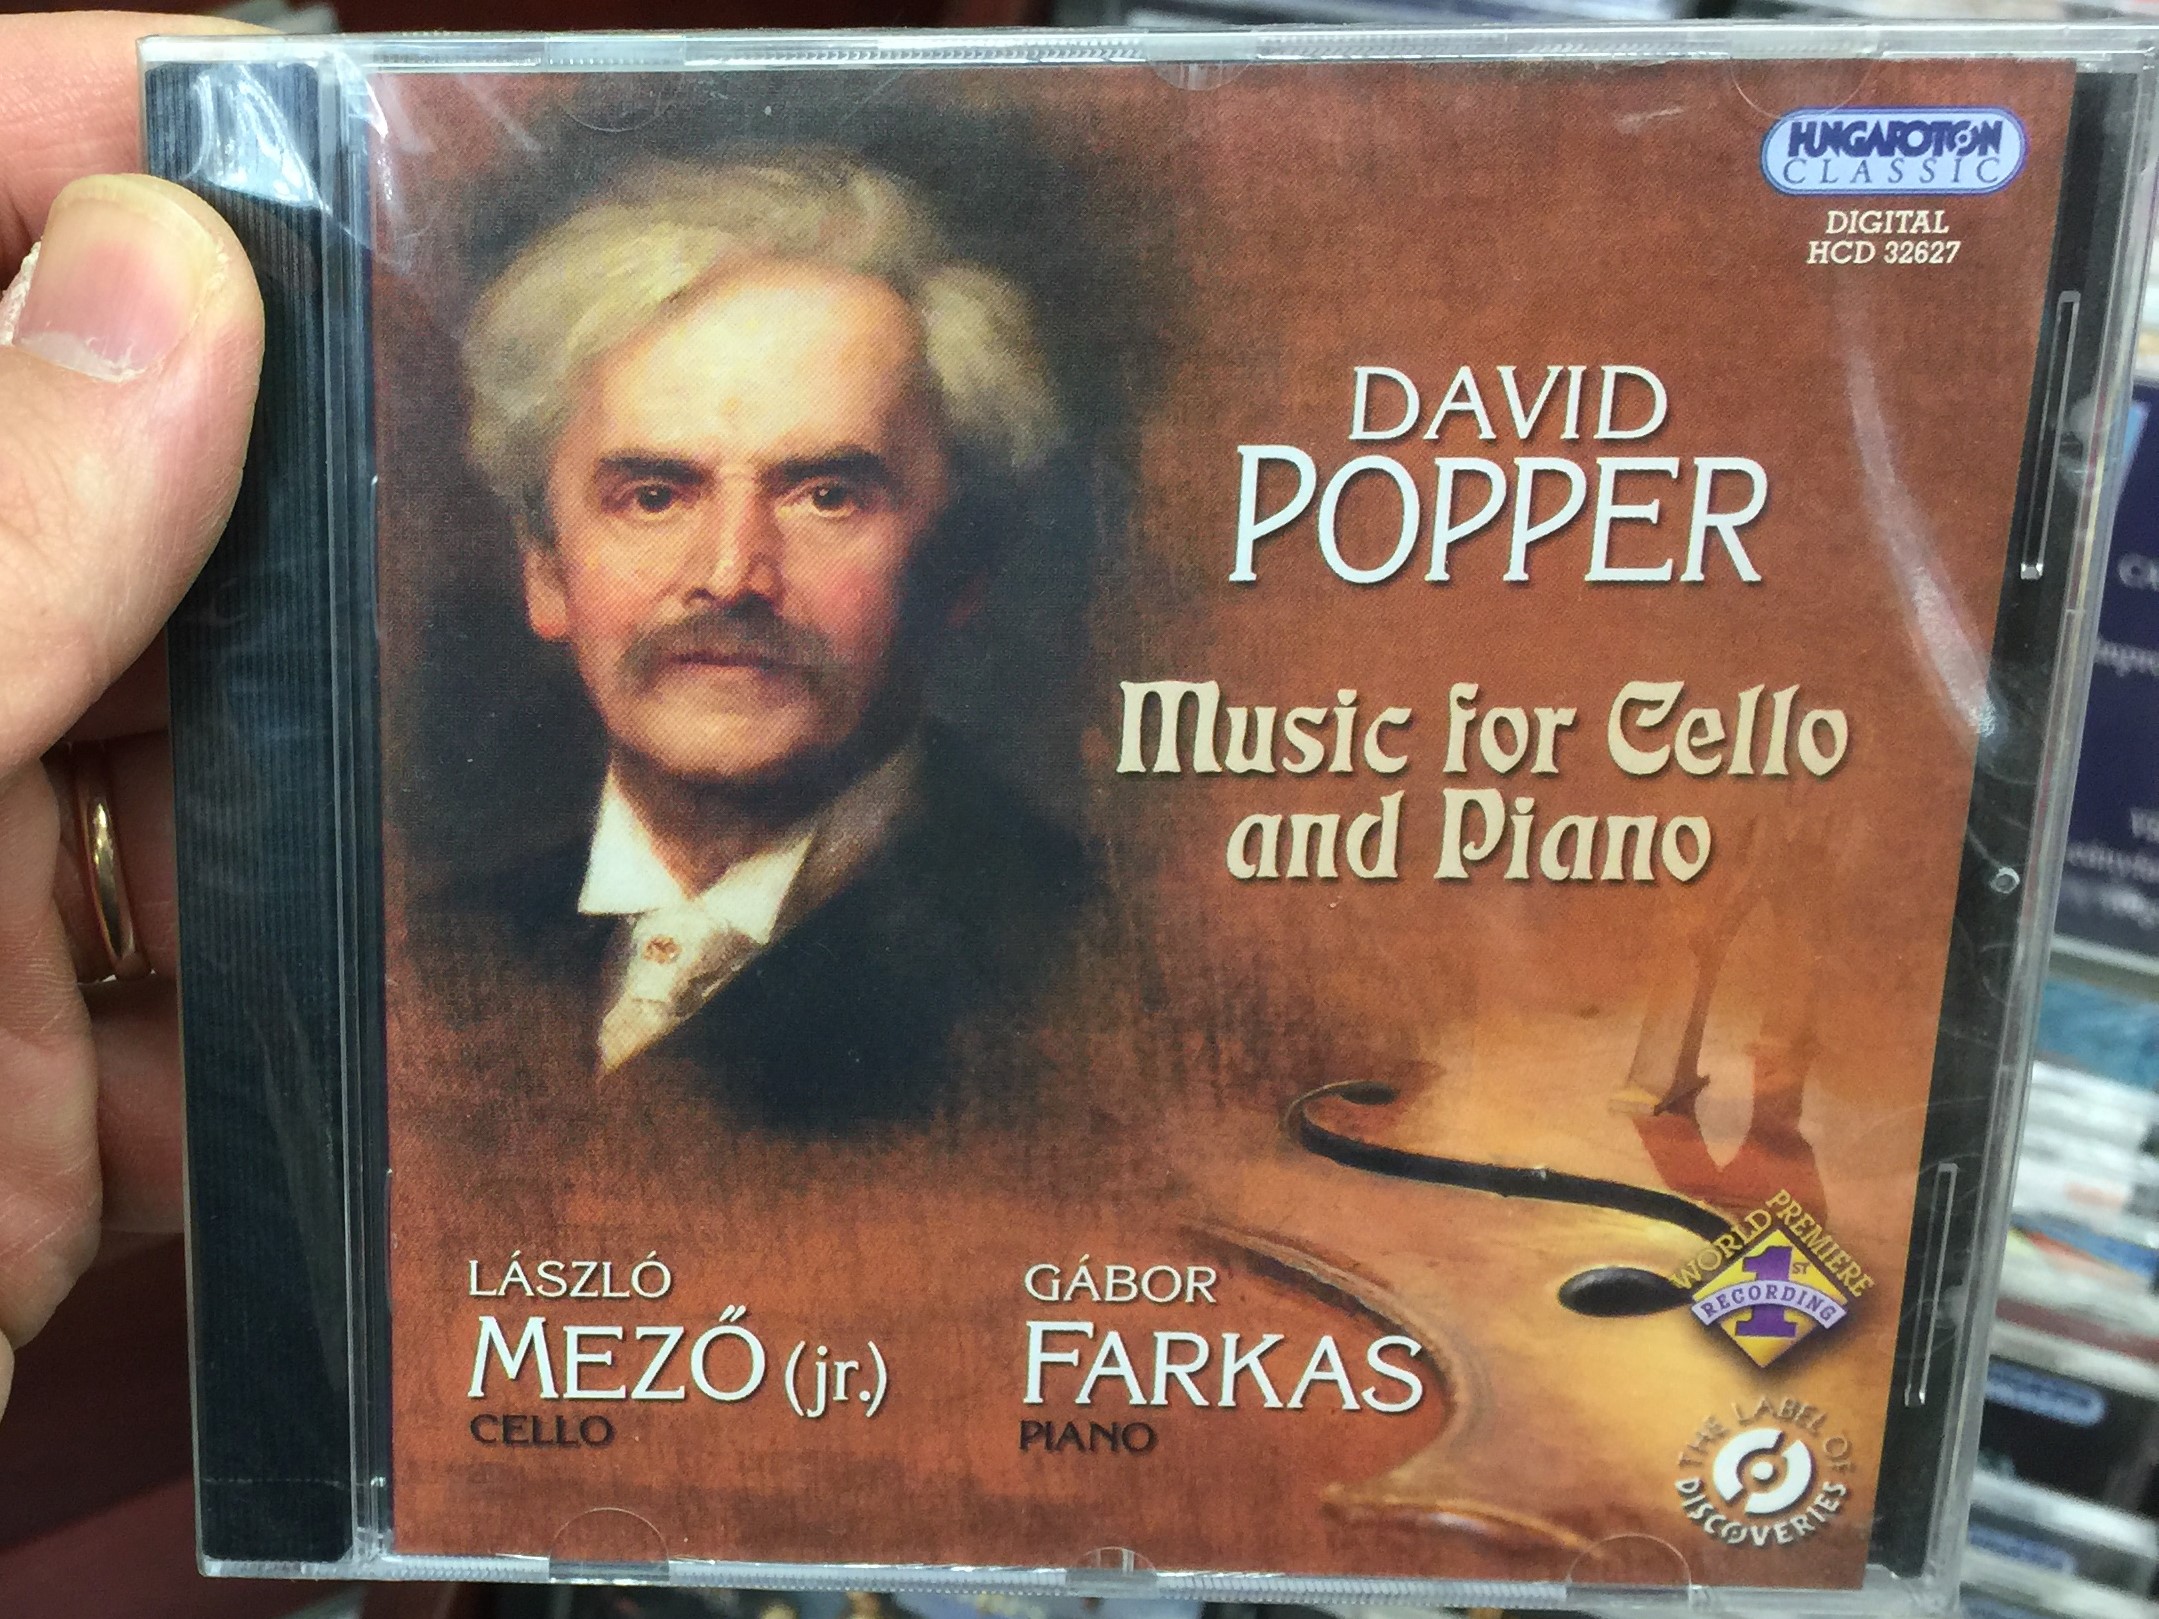 david-popper-music-for-cello-and-piano-laszlo-mezo-jr.-cello-gabor-farkas-piano-hungaroton-classic-audio-cd-2009-stereo-hcd-32627-1-.jpg